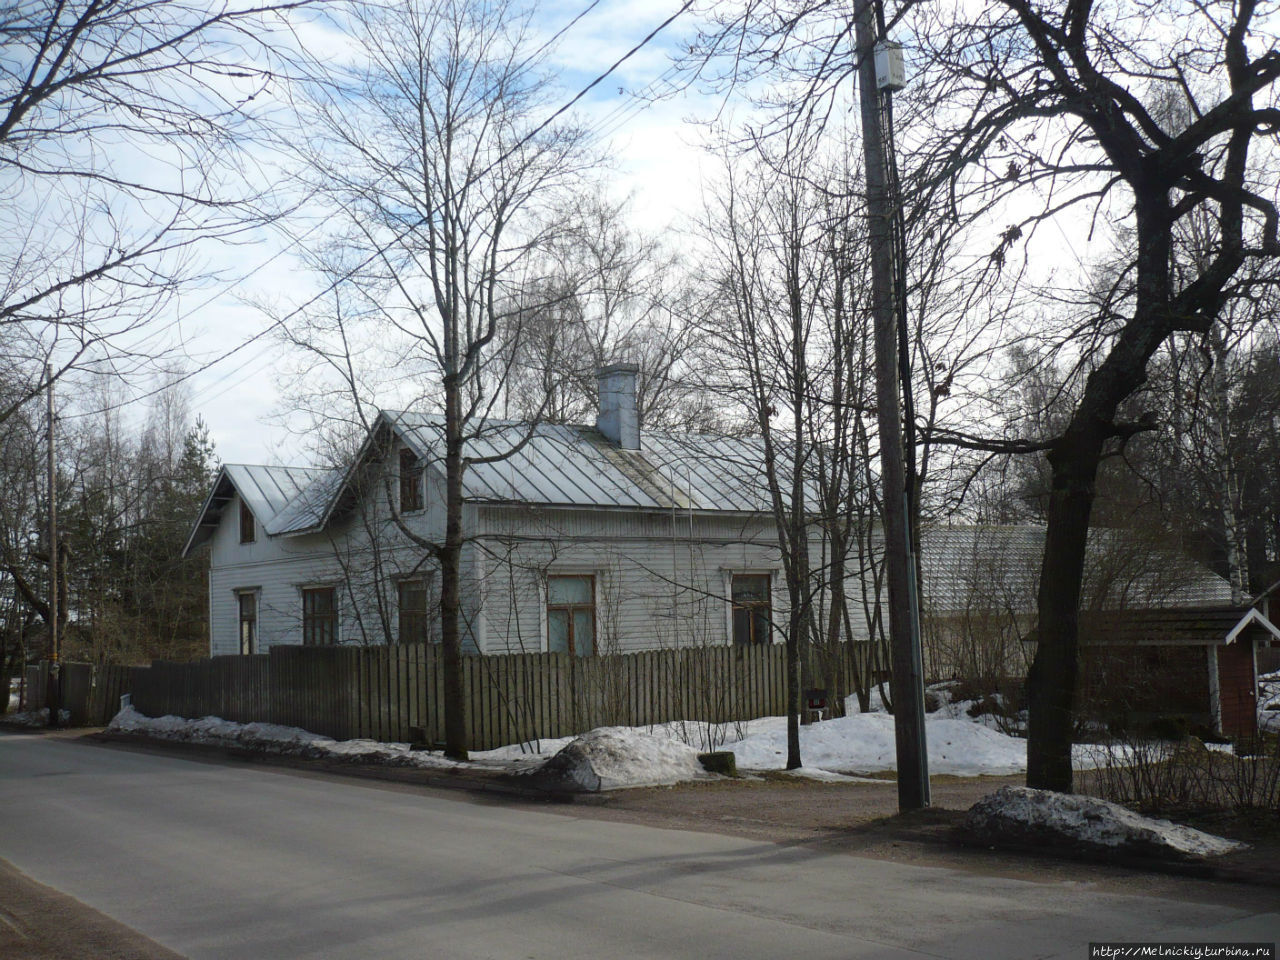 Музейный квартал «Кауниснурми» Коувола, Финляндия